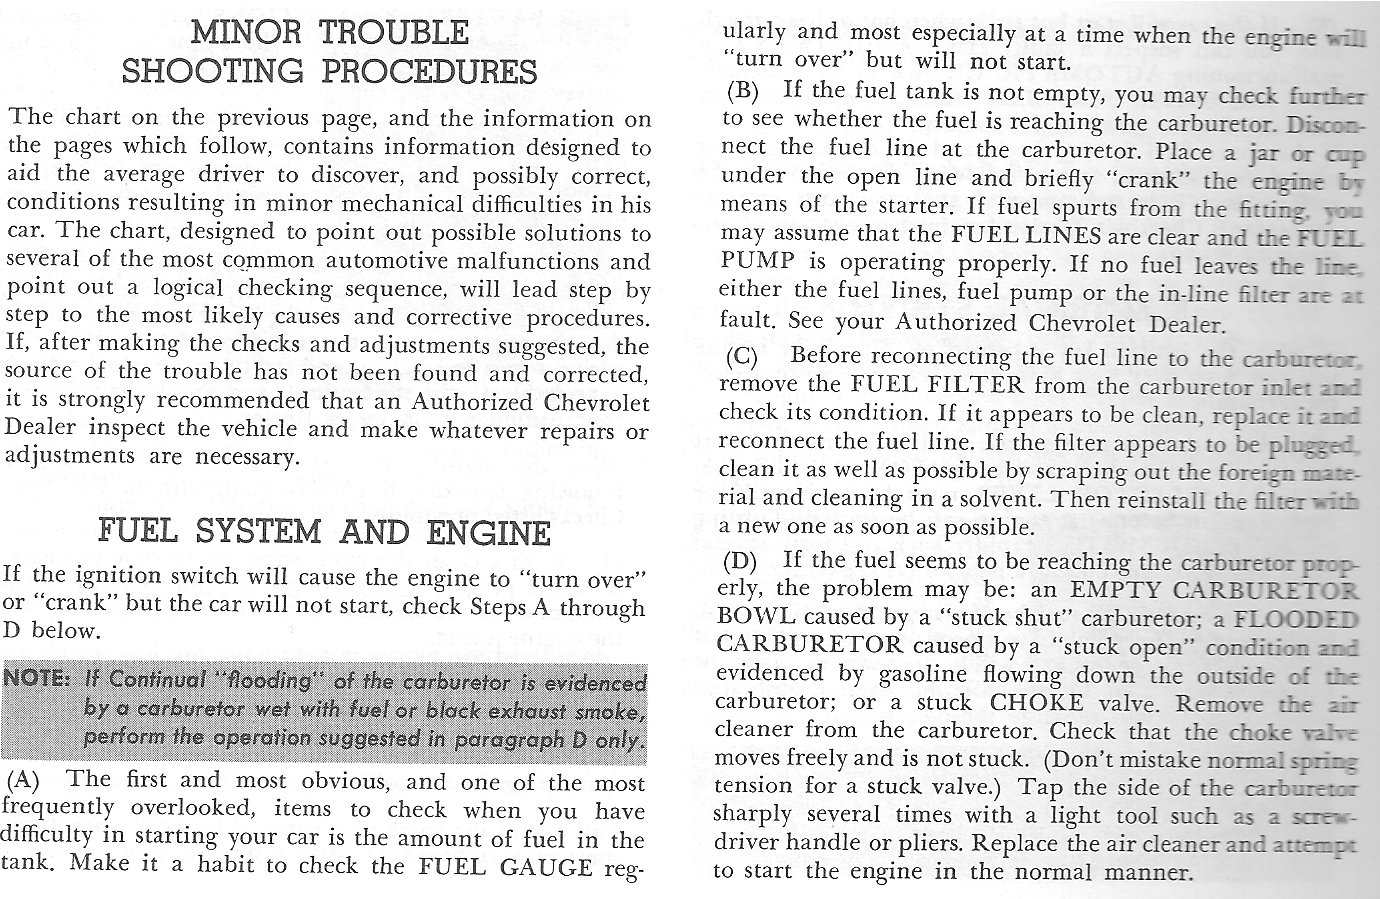 1964 Corvette Owners Manual-42